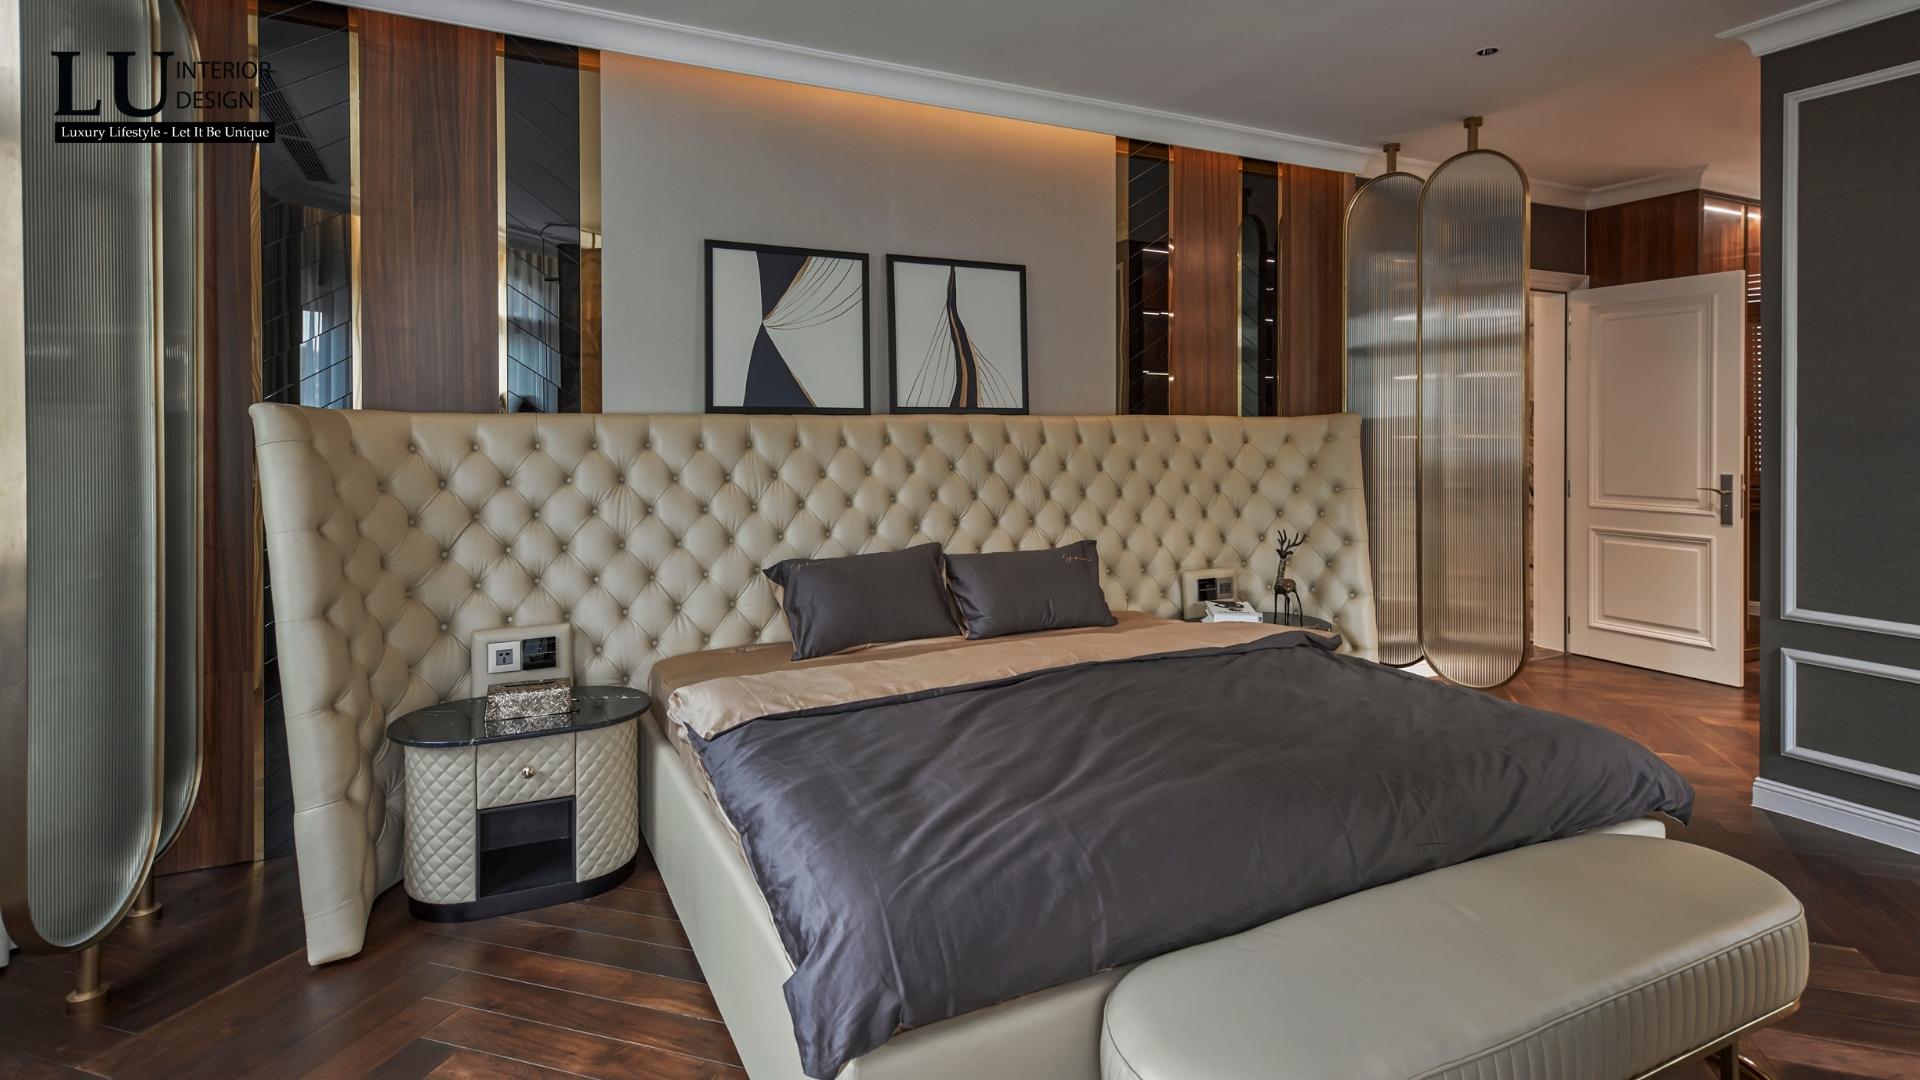 Chiêm ngưỡng chiếc giường ngủ xa hoa của giới thượng lưu | Dự án Victoria Village - LU Design.